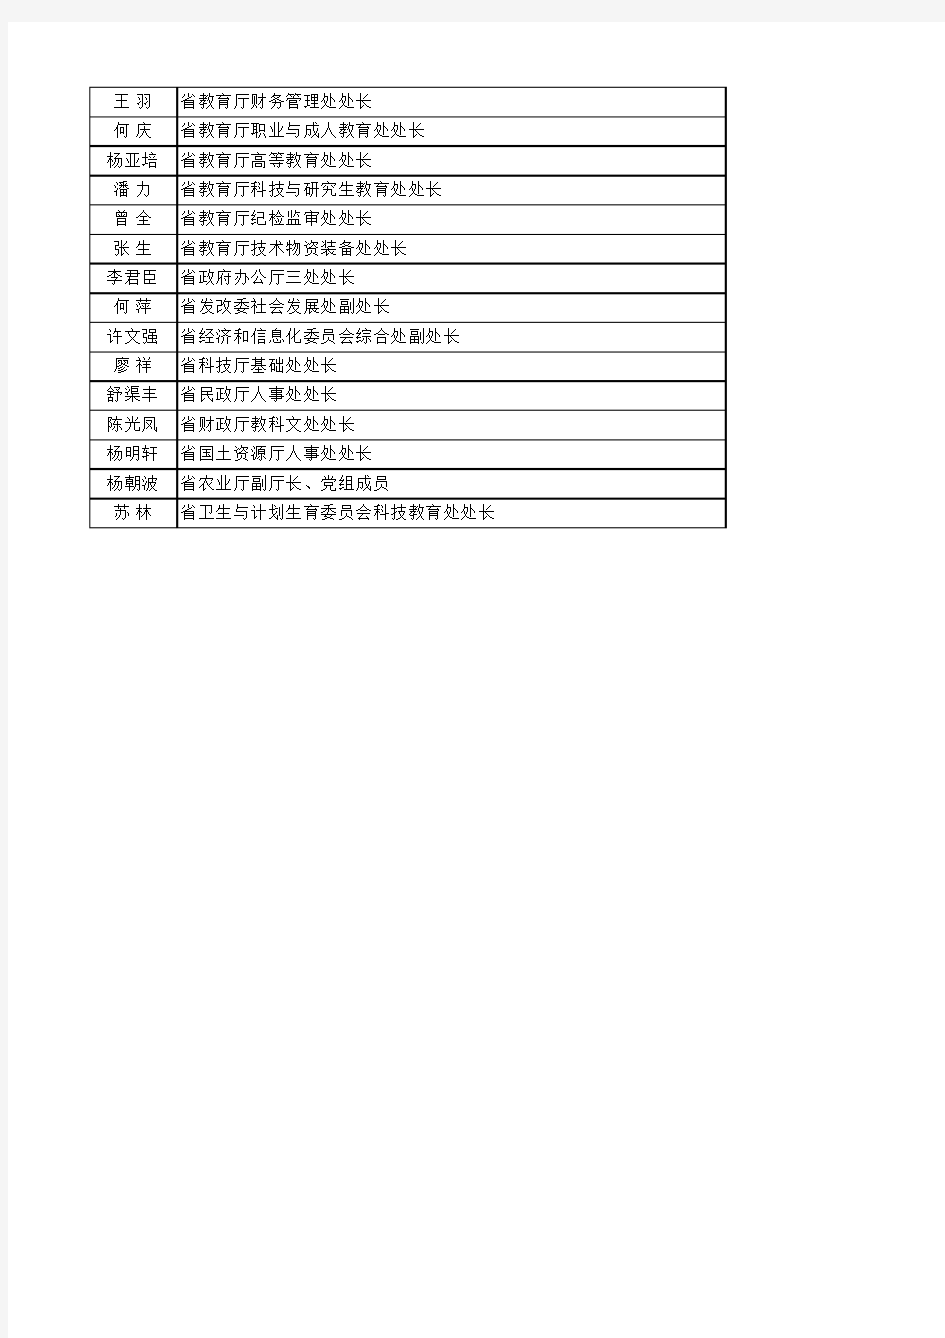 四川省第五届高等学校设置评议委员会专家候选人名单